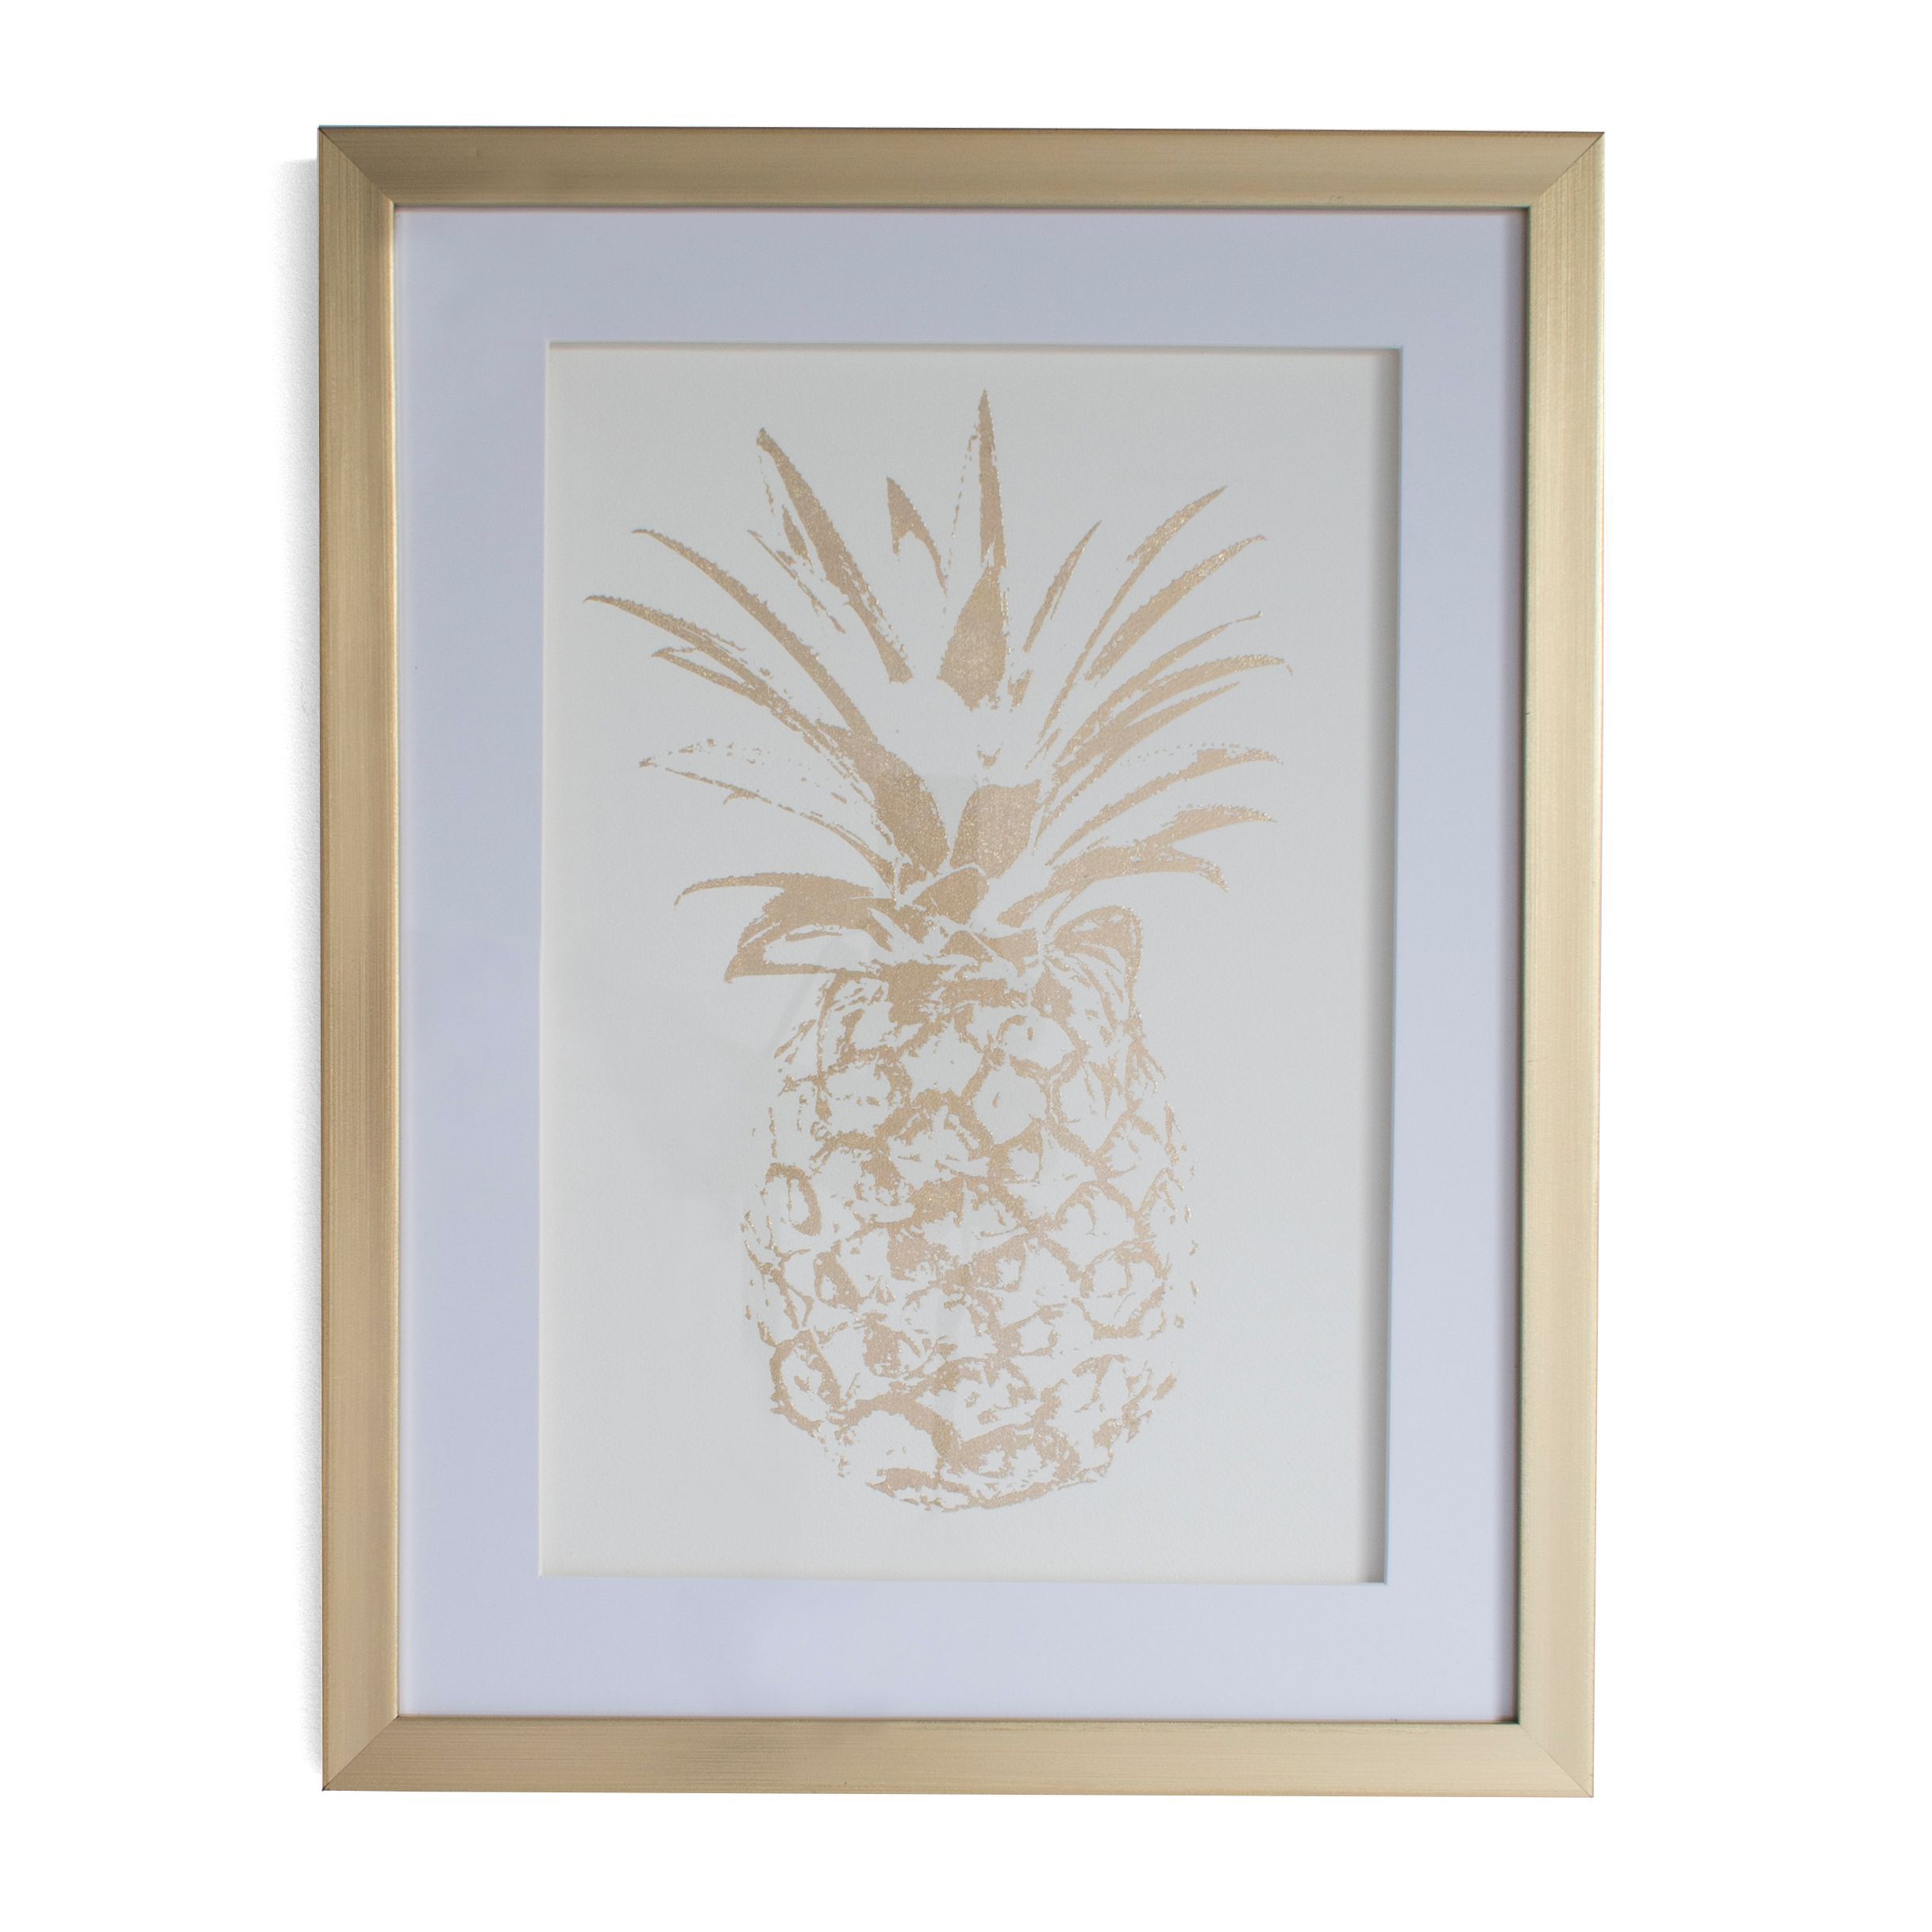 Pineapple White Framed print (H)430mm (W)330mm